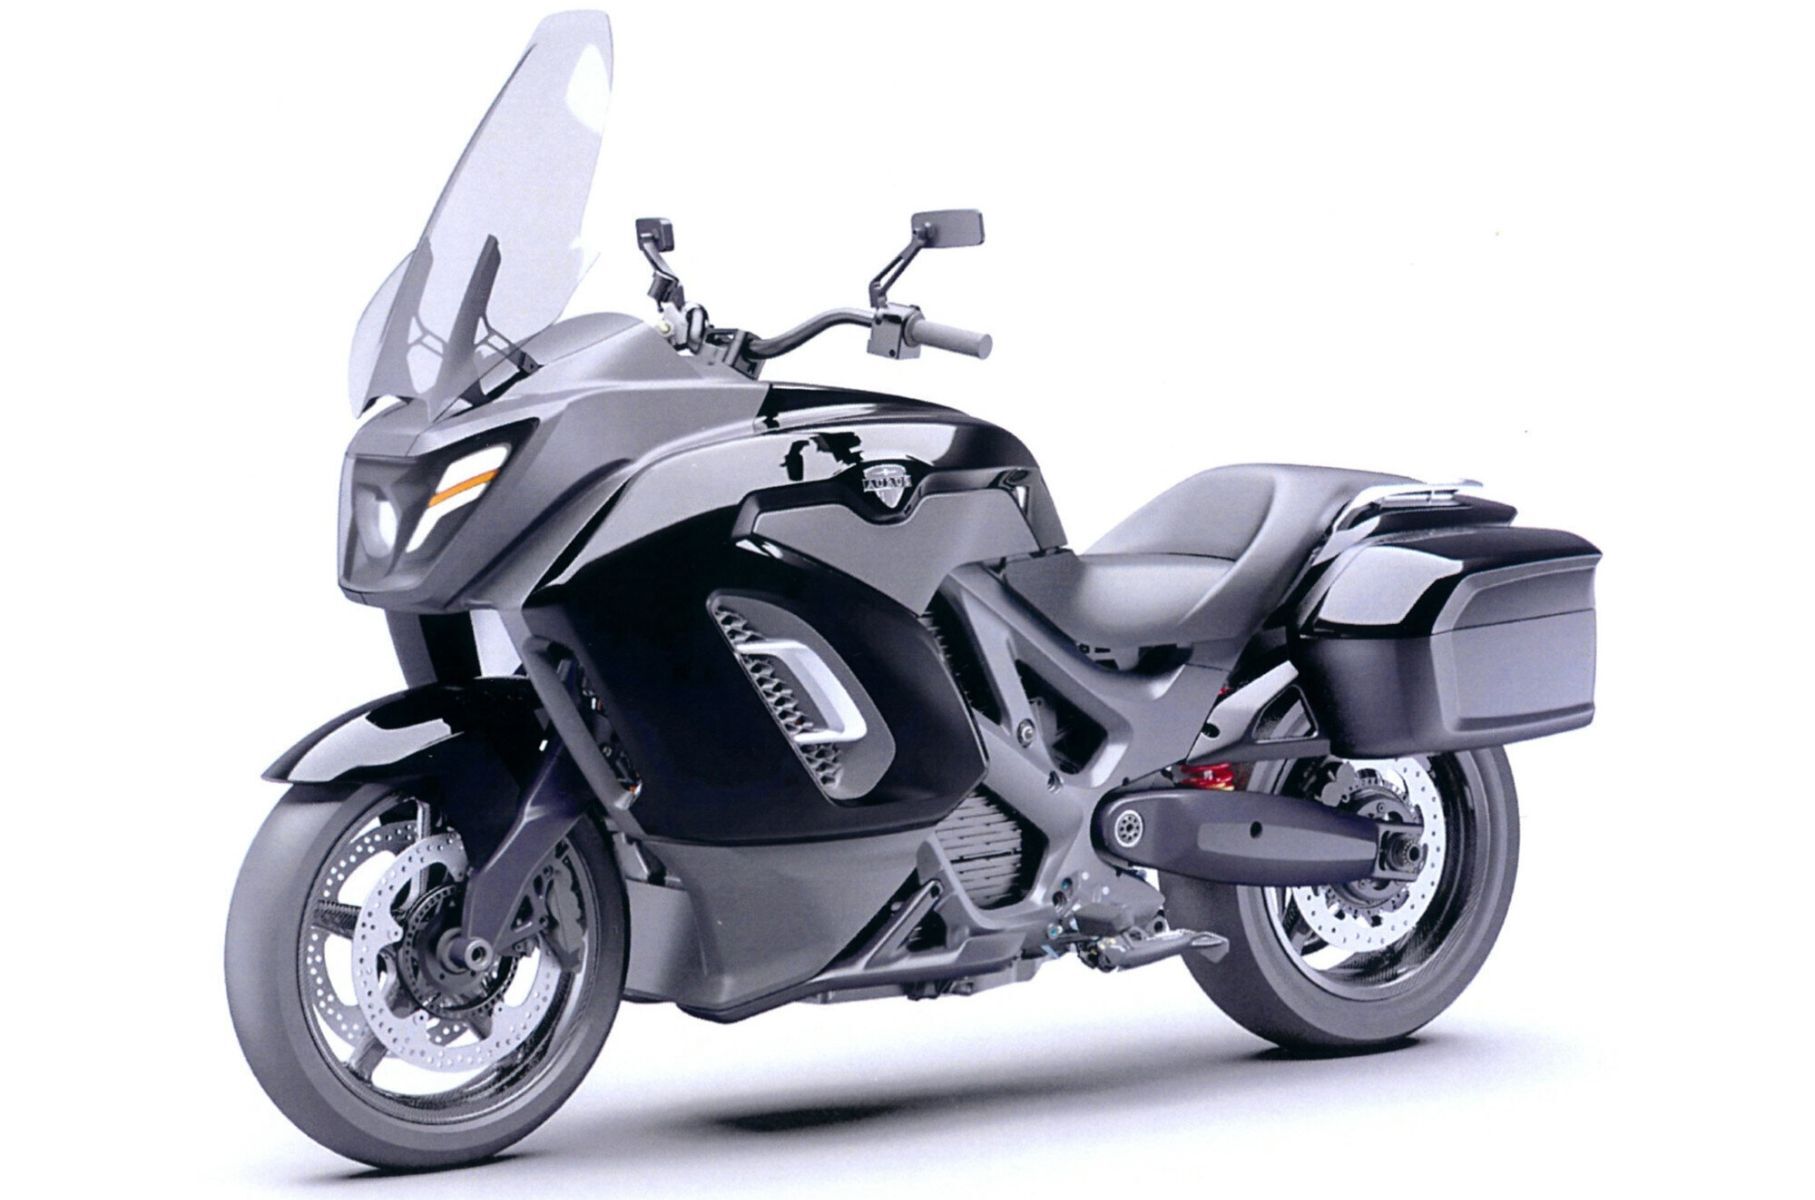 Появились изображения коляски для мотоцикла Aurus